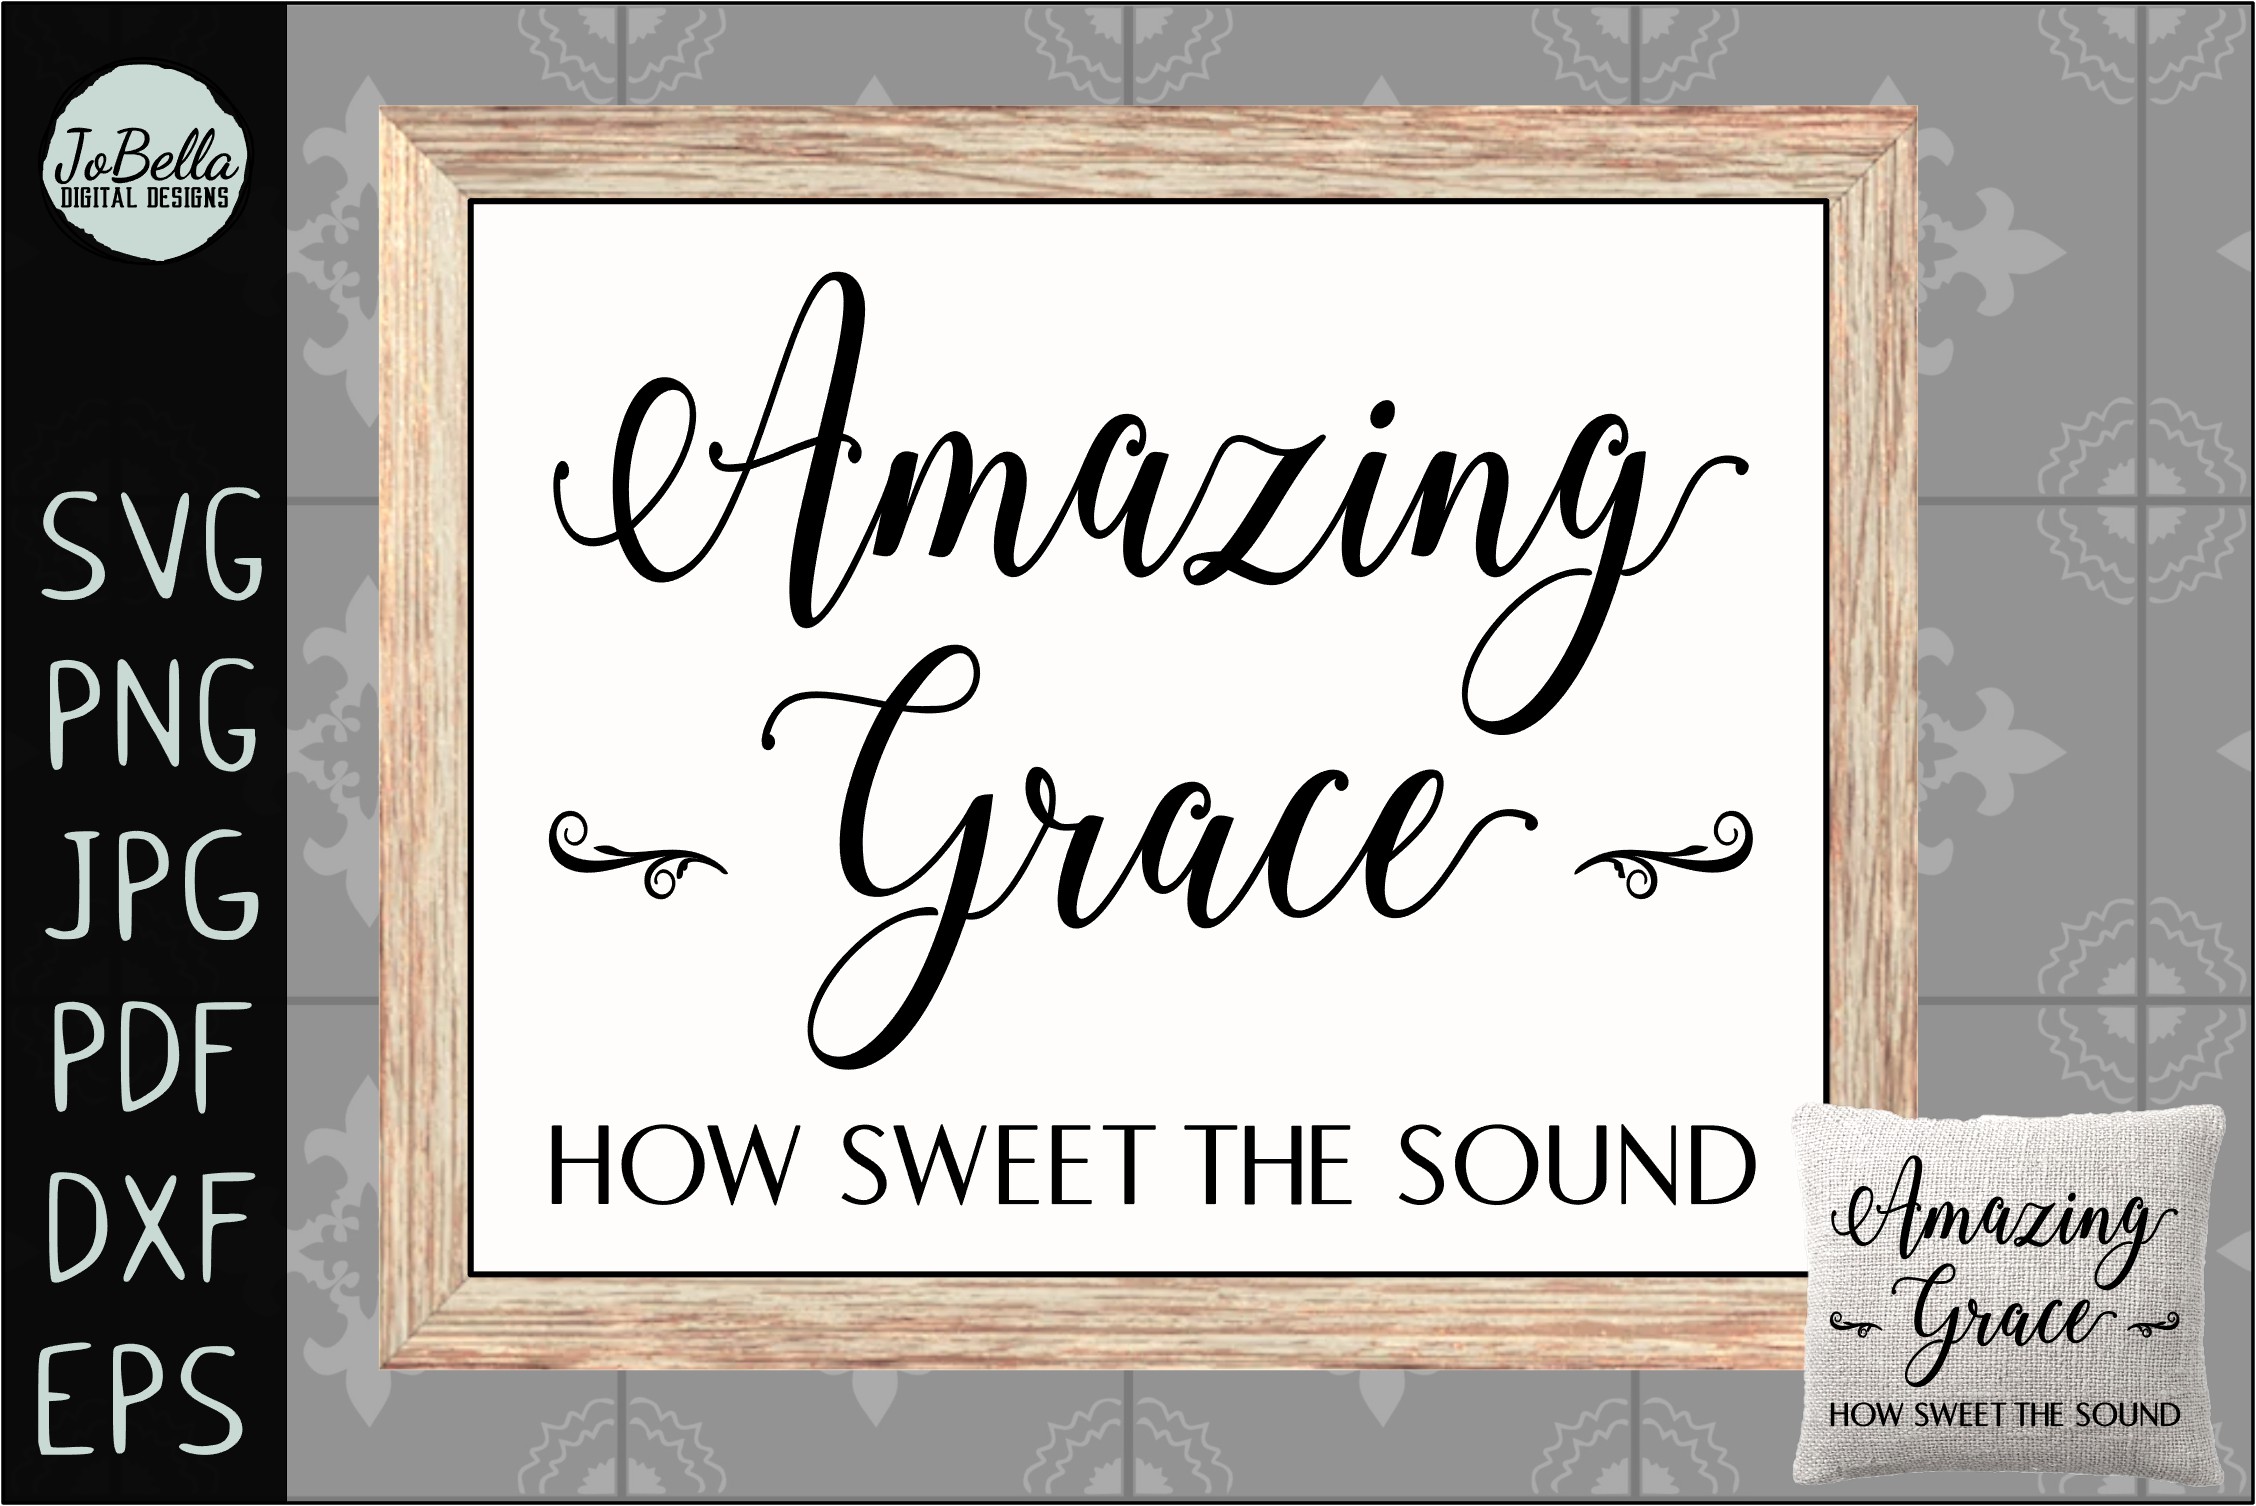 Amazing Grace SVG, Sublimation & Printable Christian Design (304819) | Cut Files | Design Bundles